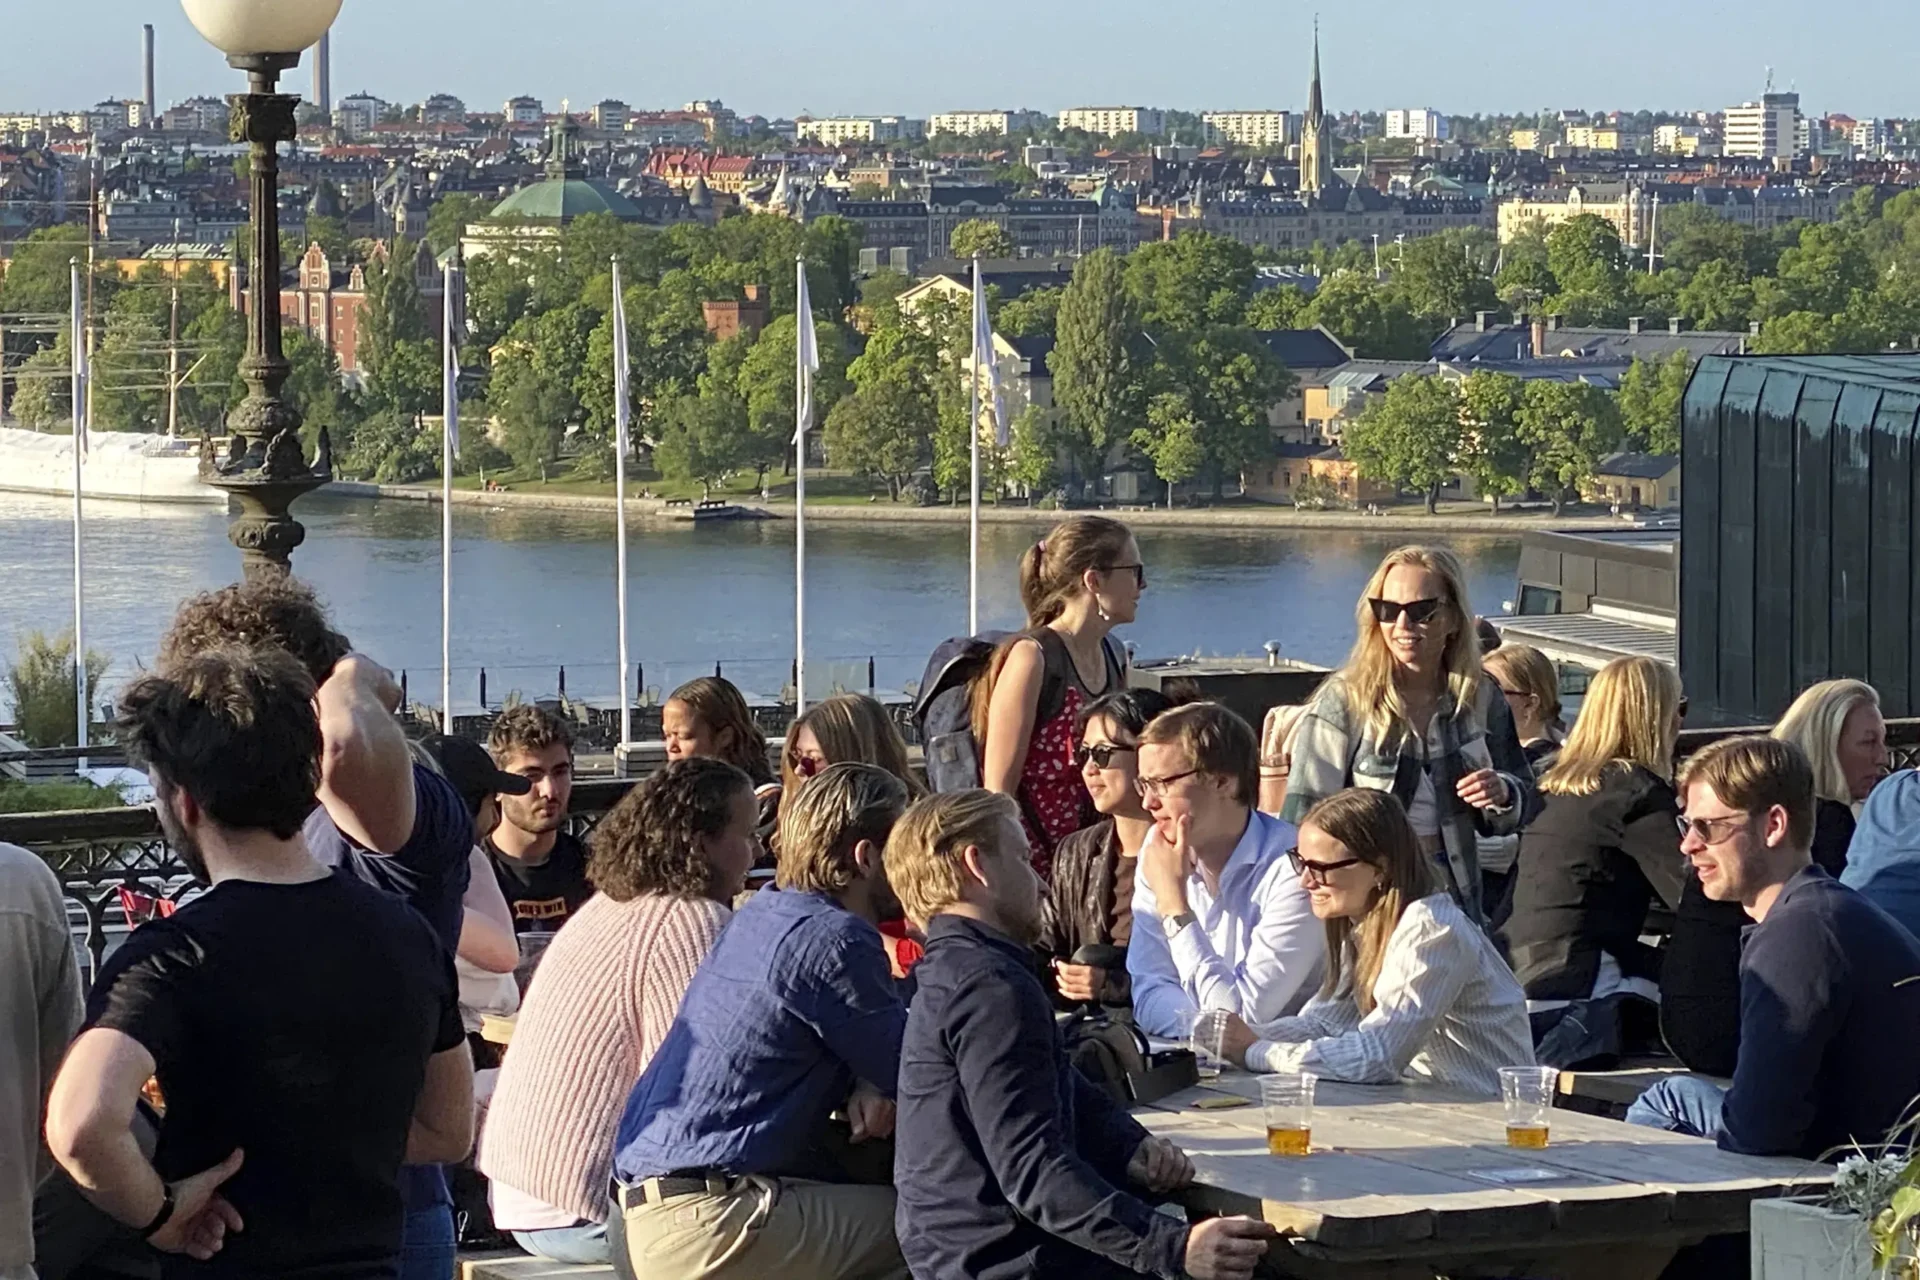 Suecia está cerca de convertirse en el primer país “libre de humo” de Europa a medida que disminuye el uso diario de cigarrillos